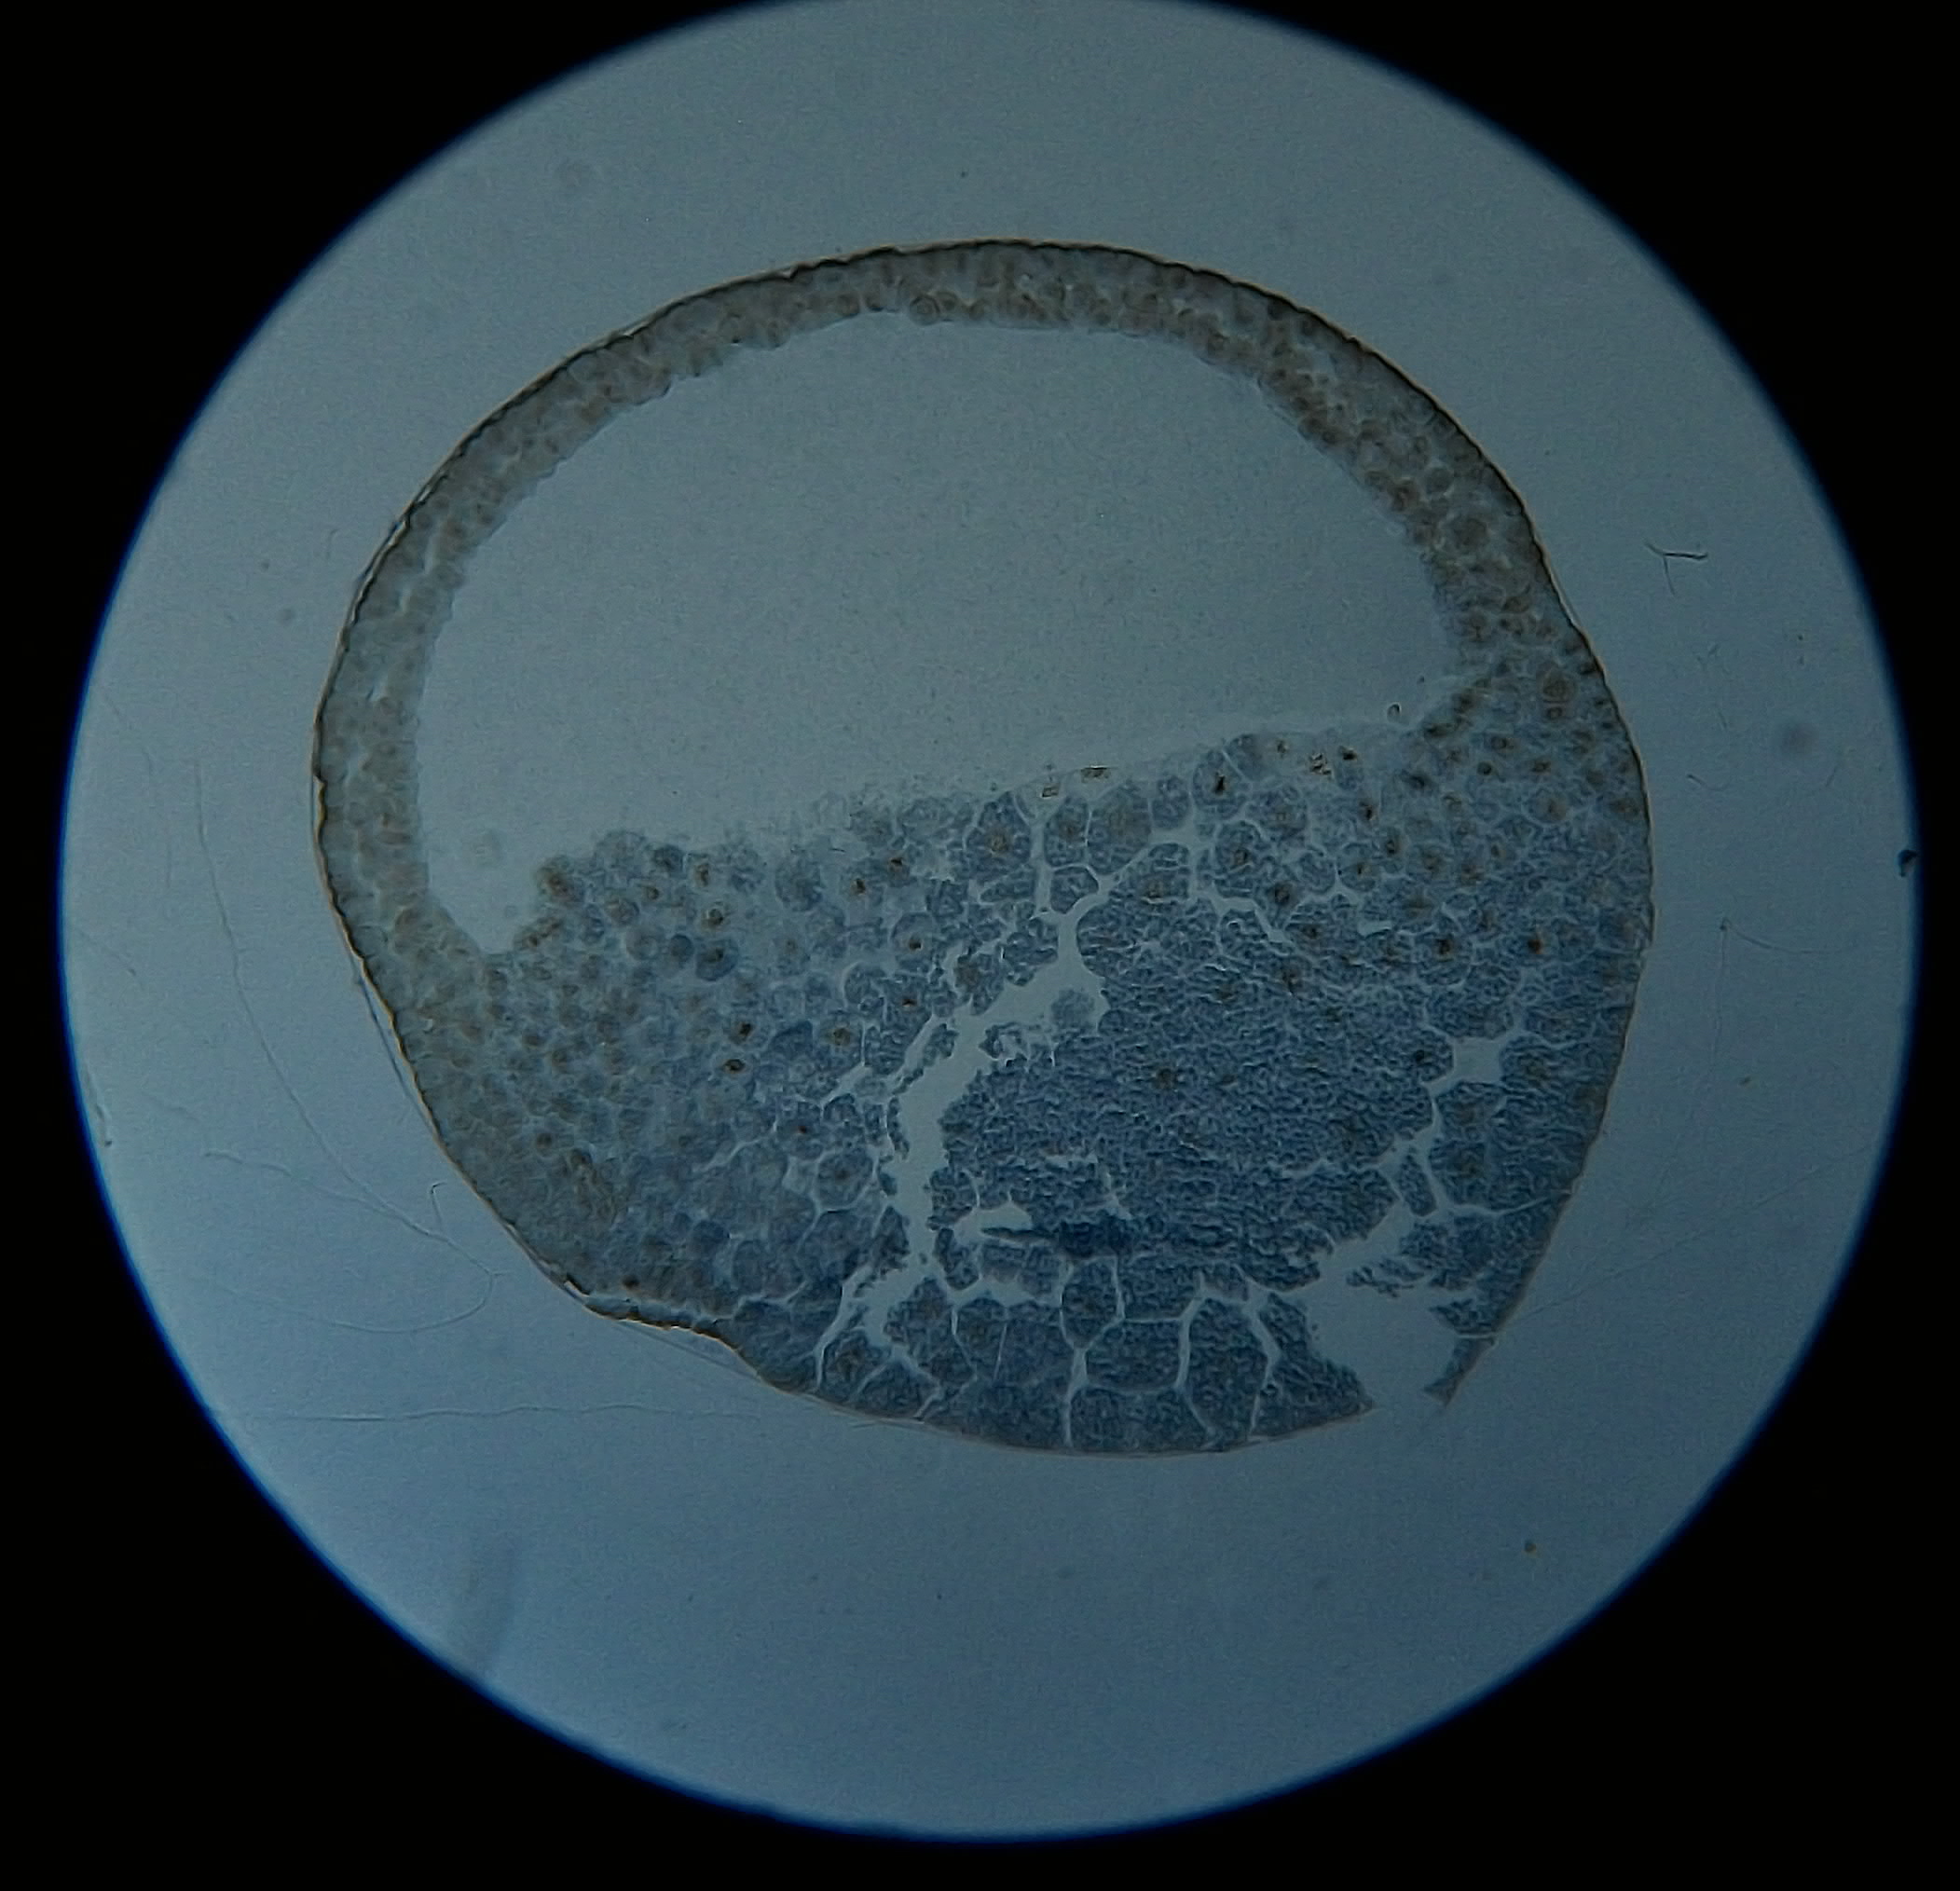 原肠胚中胚层图片